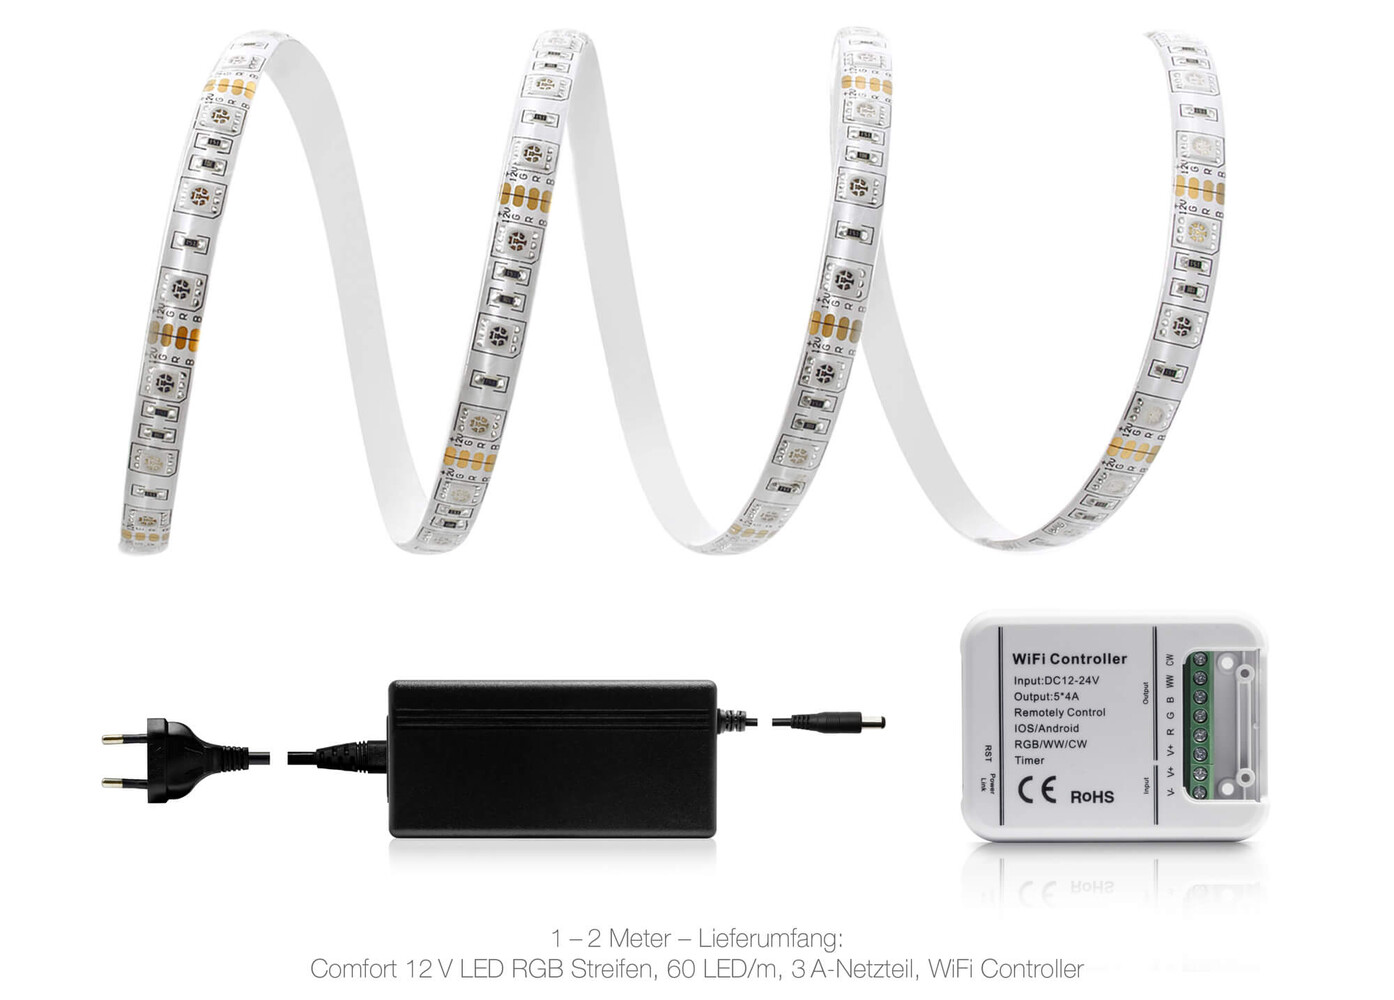 Hochwertiger, farbenfroher LED Streifen von LED Universum mit integrierter WLAN-Funktion